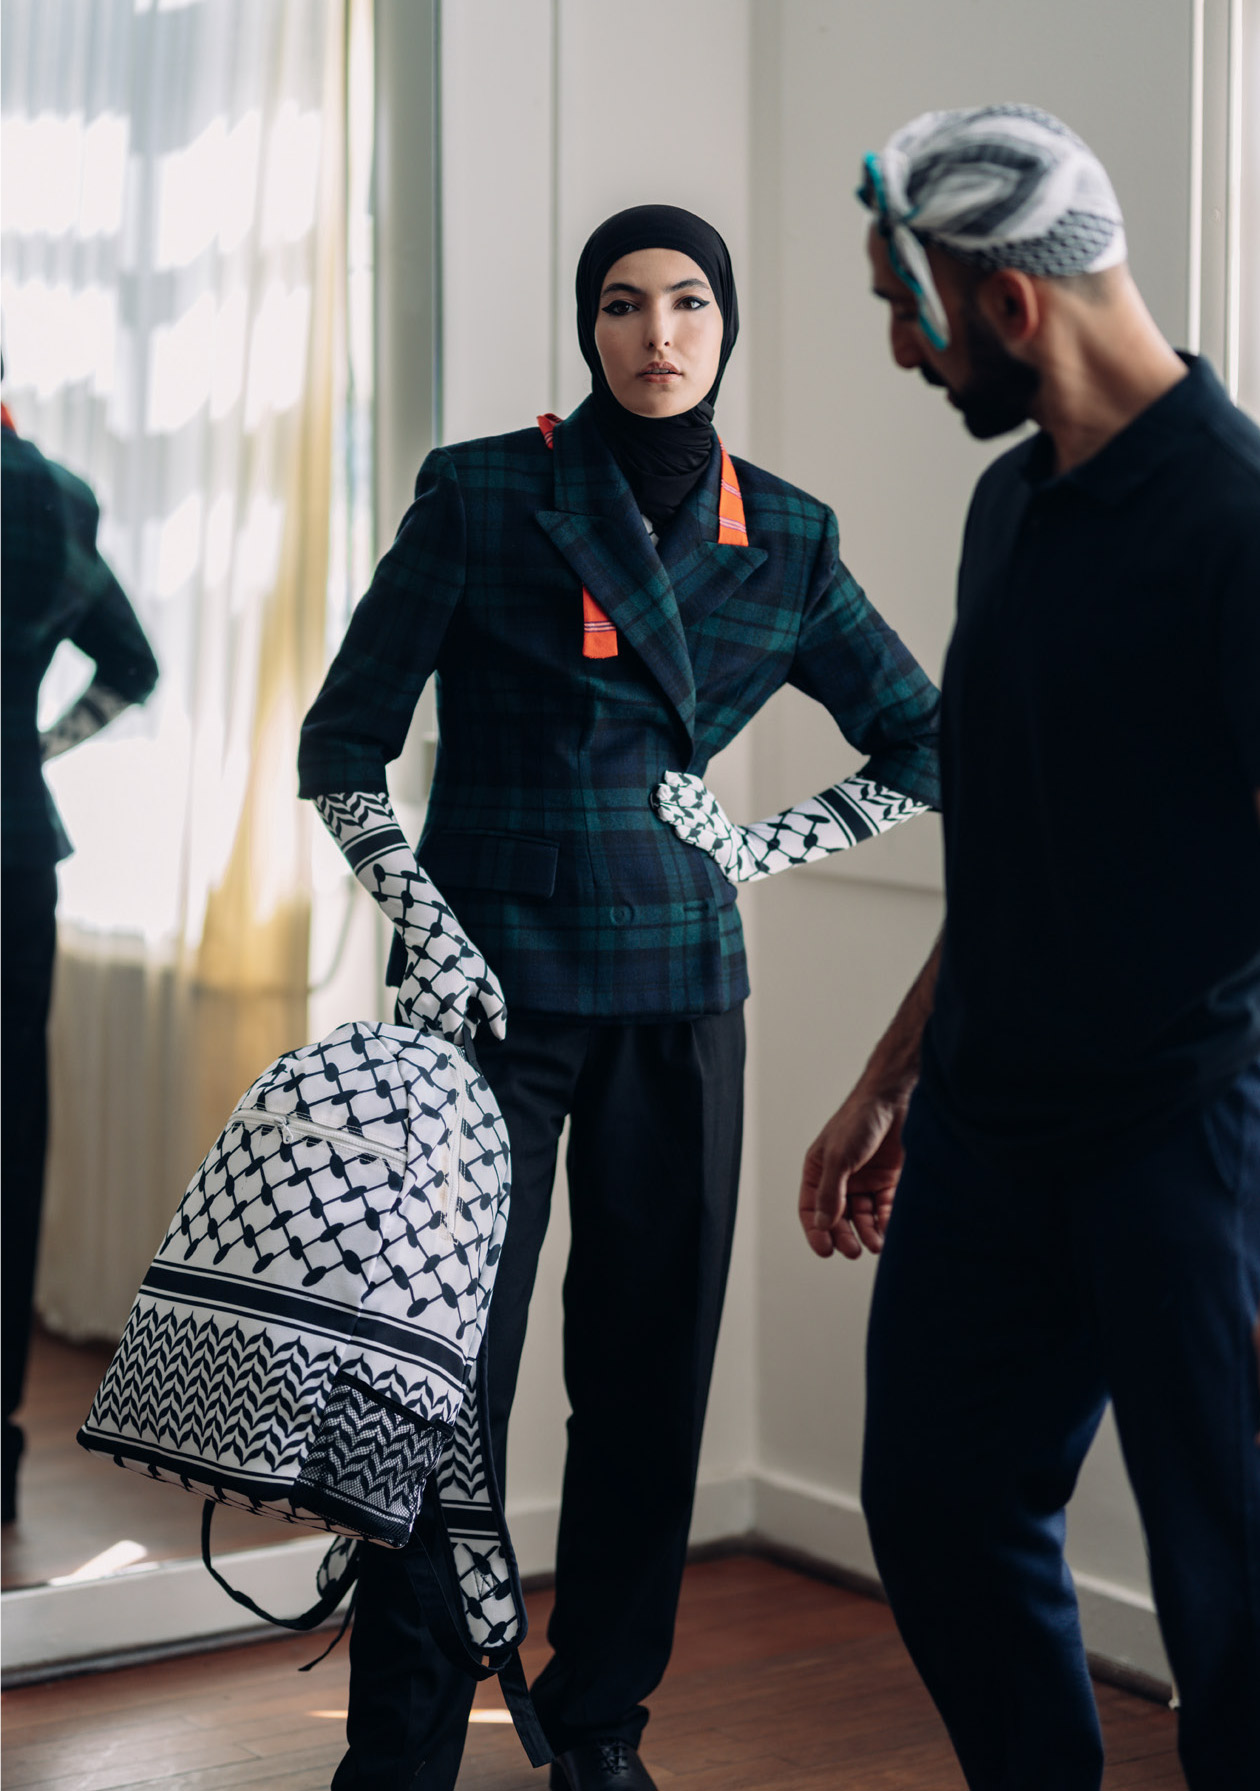 الشال الفلسطيني يدخل في صناعة الأزياء